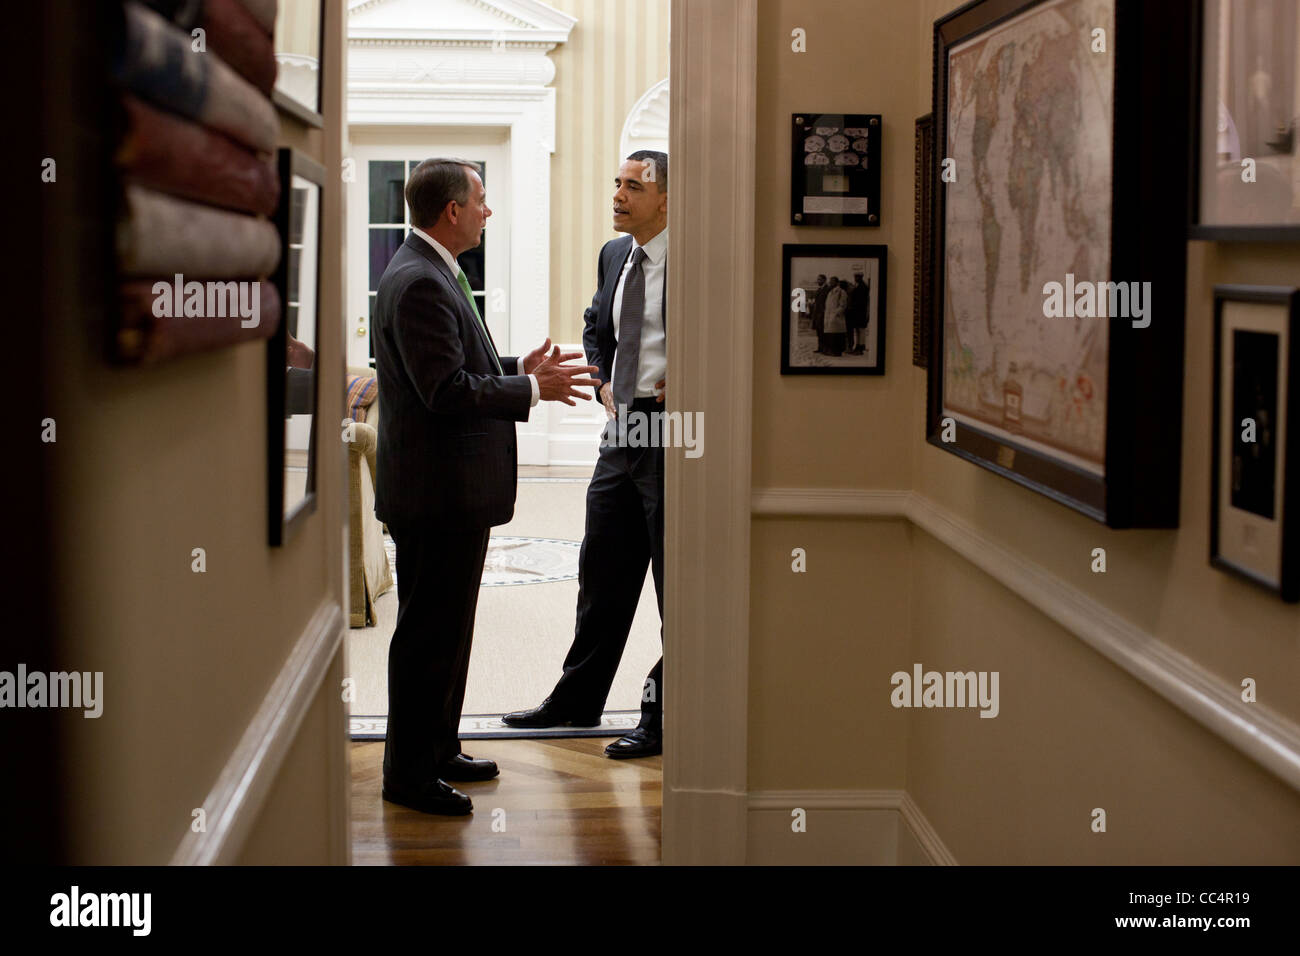 President Obama speaking with House Speaker John Boehner in the Oval Office. Stock Photo